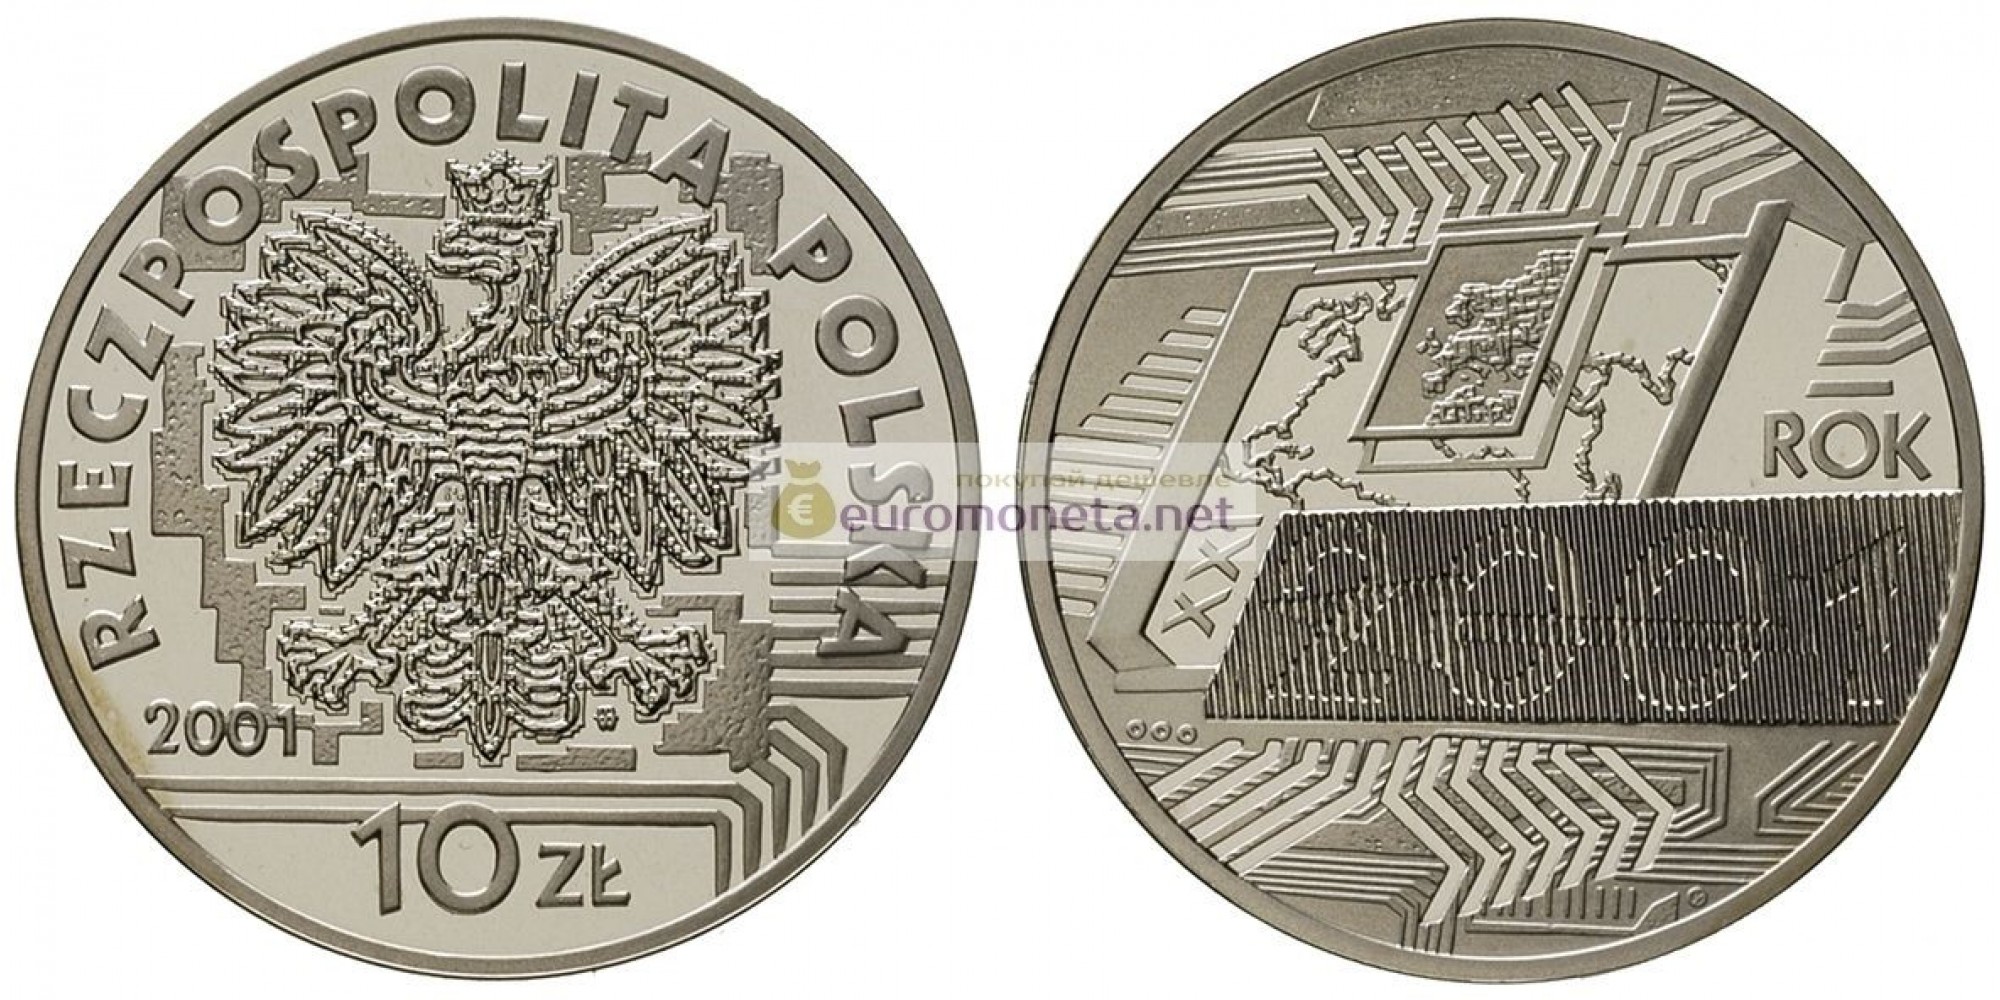 Польша 10 злотых 2001 год с голограммой 2001 года серебро пруф